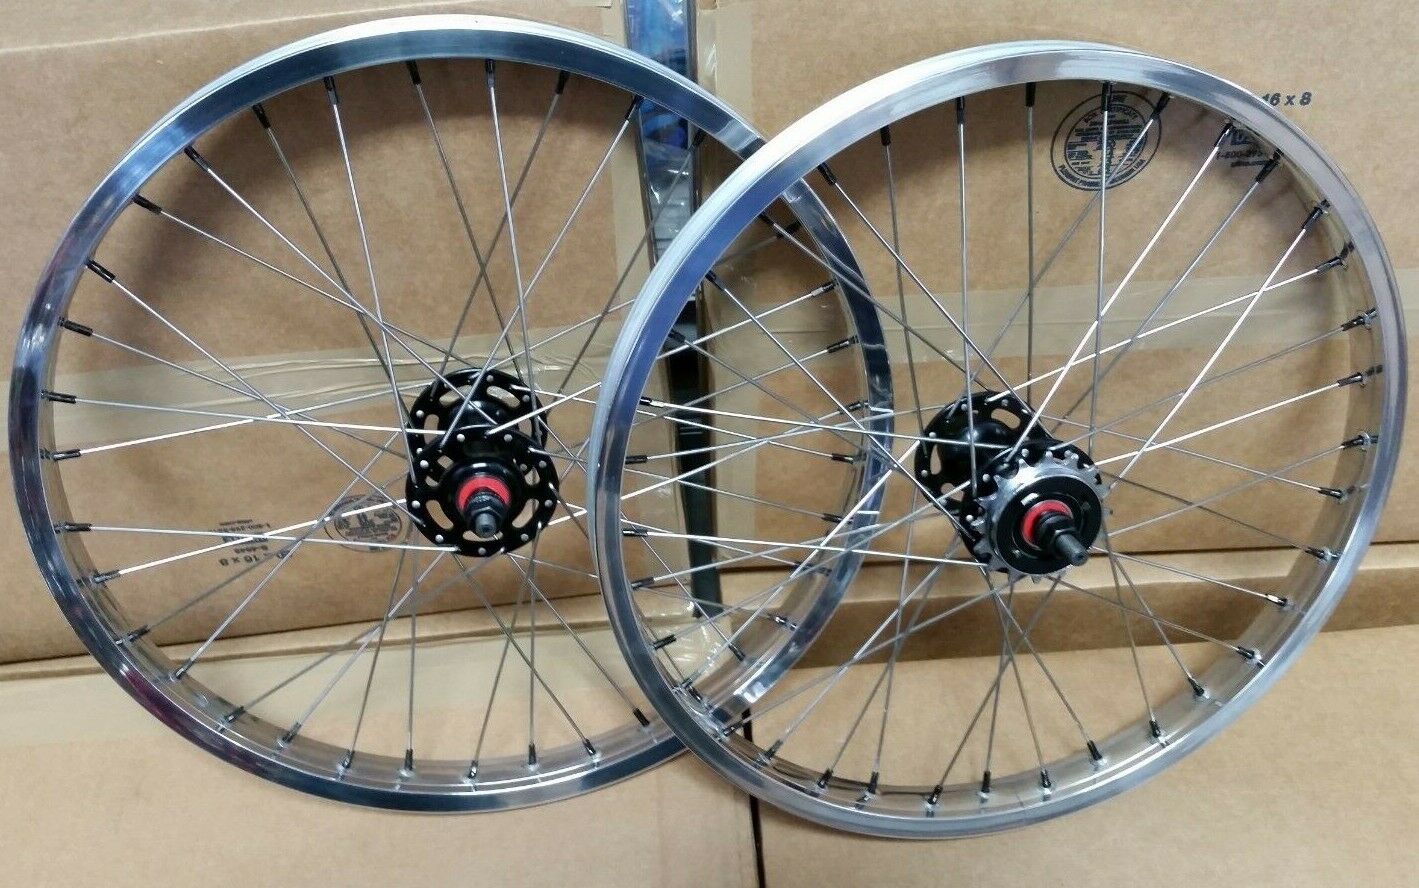 20" 7X style Sealed Road Flange BMX Wheelset w/ 16t Freewheel - Pair - Polished / Black